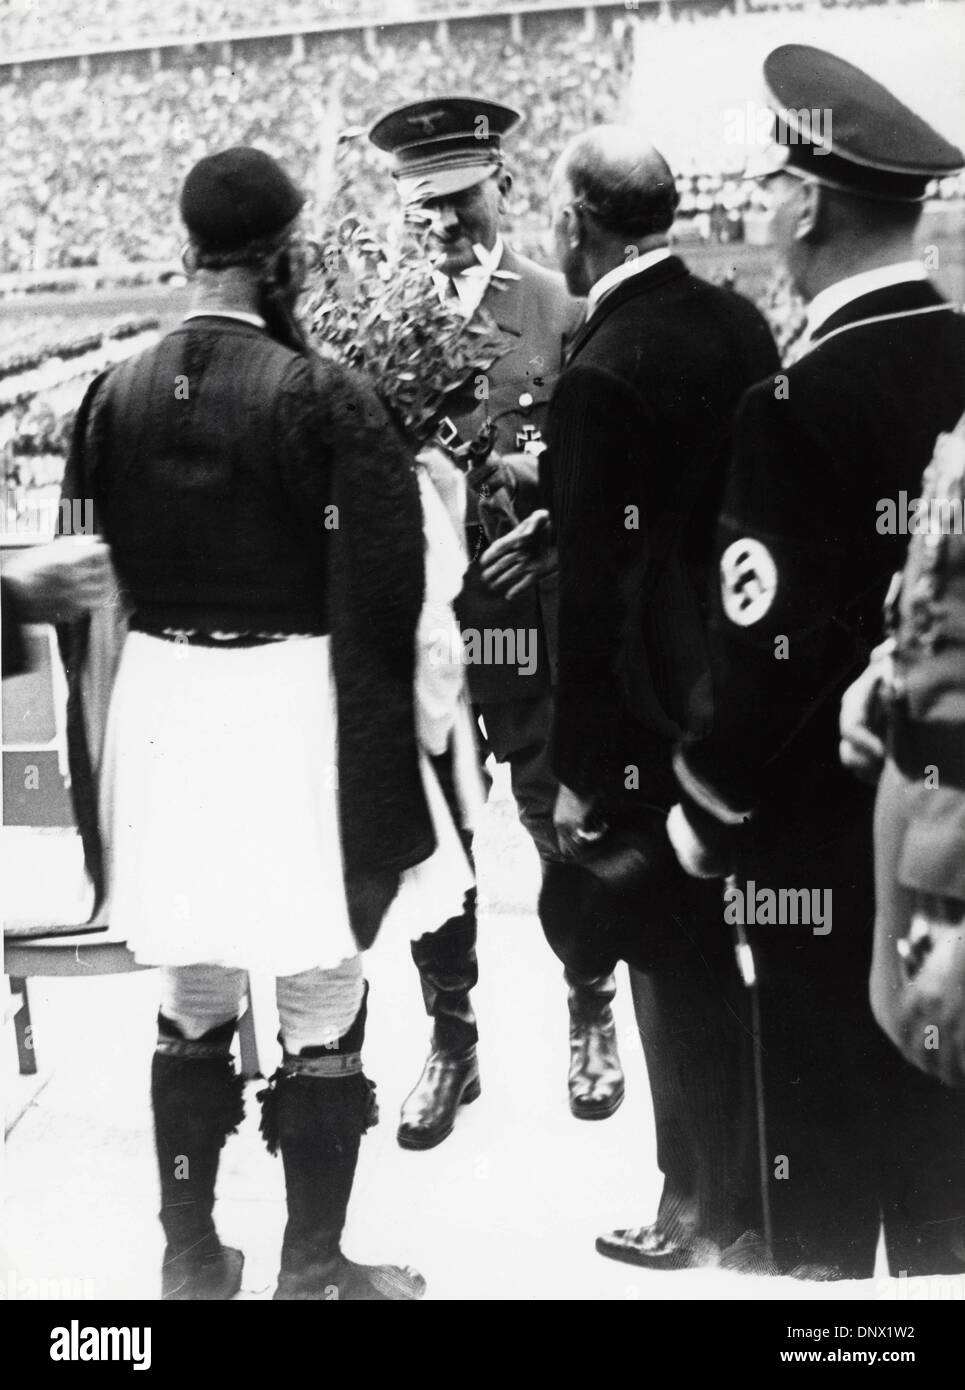 2 maggio 1936 - Berlino, Germania - leader nazista ADOLF HITLER congratularmi con una maratona greca atleta di Olympia le olimpiadi del 1896 durante la cerimonia di apertura dei Giochi Olimpici di Berlino Germania. (Credito Immagine: © Keystone Pictures USA/ZUMAPRESS.com) Foto Stock